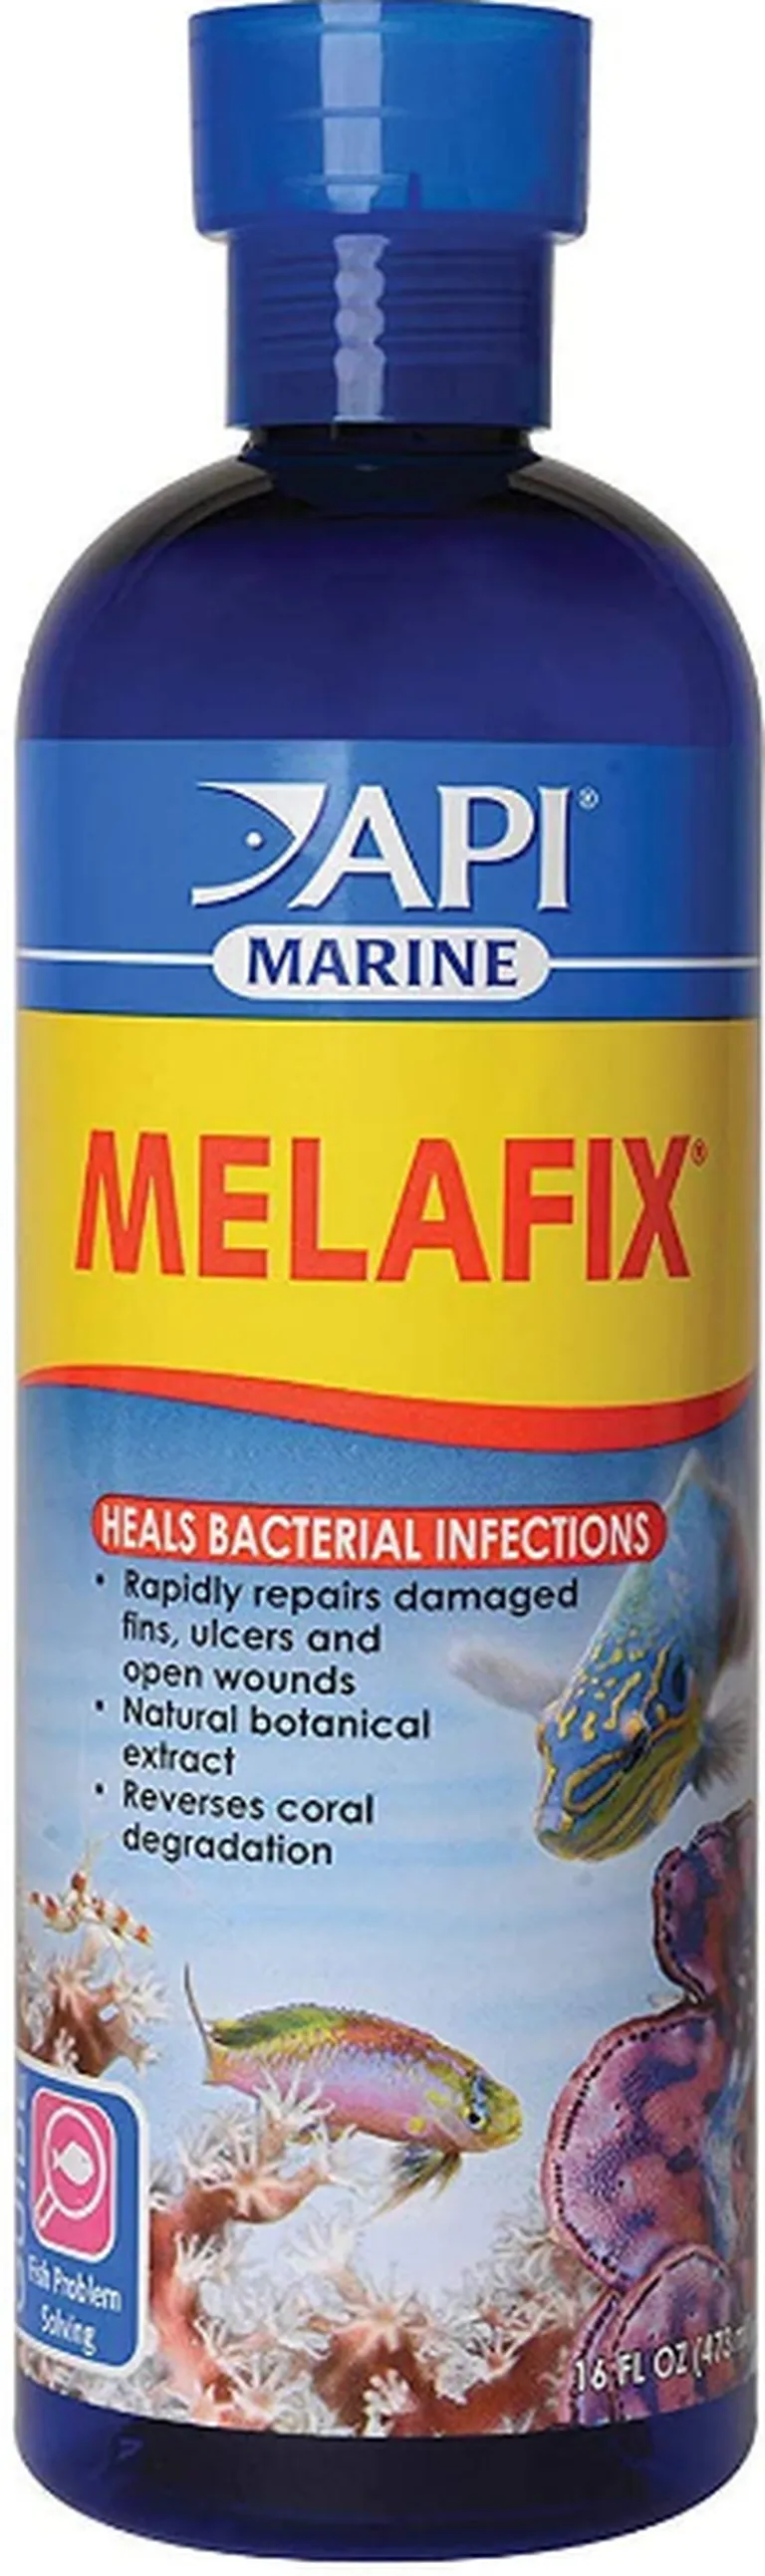 API Marine Melafix Heals Bacterial Infections Photo 1